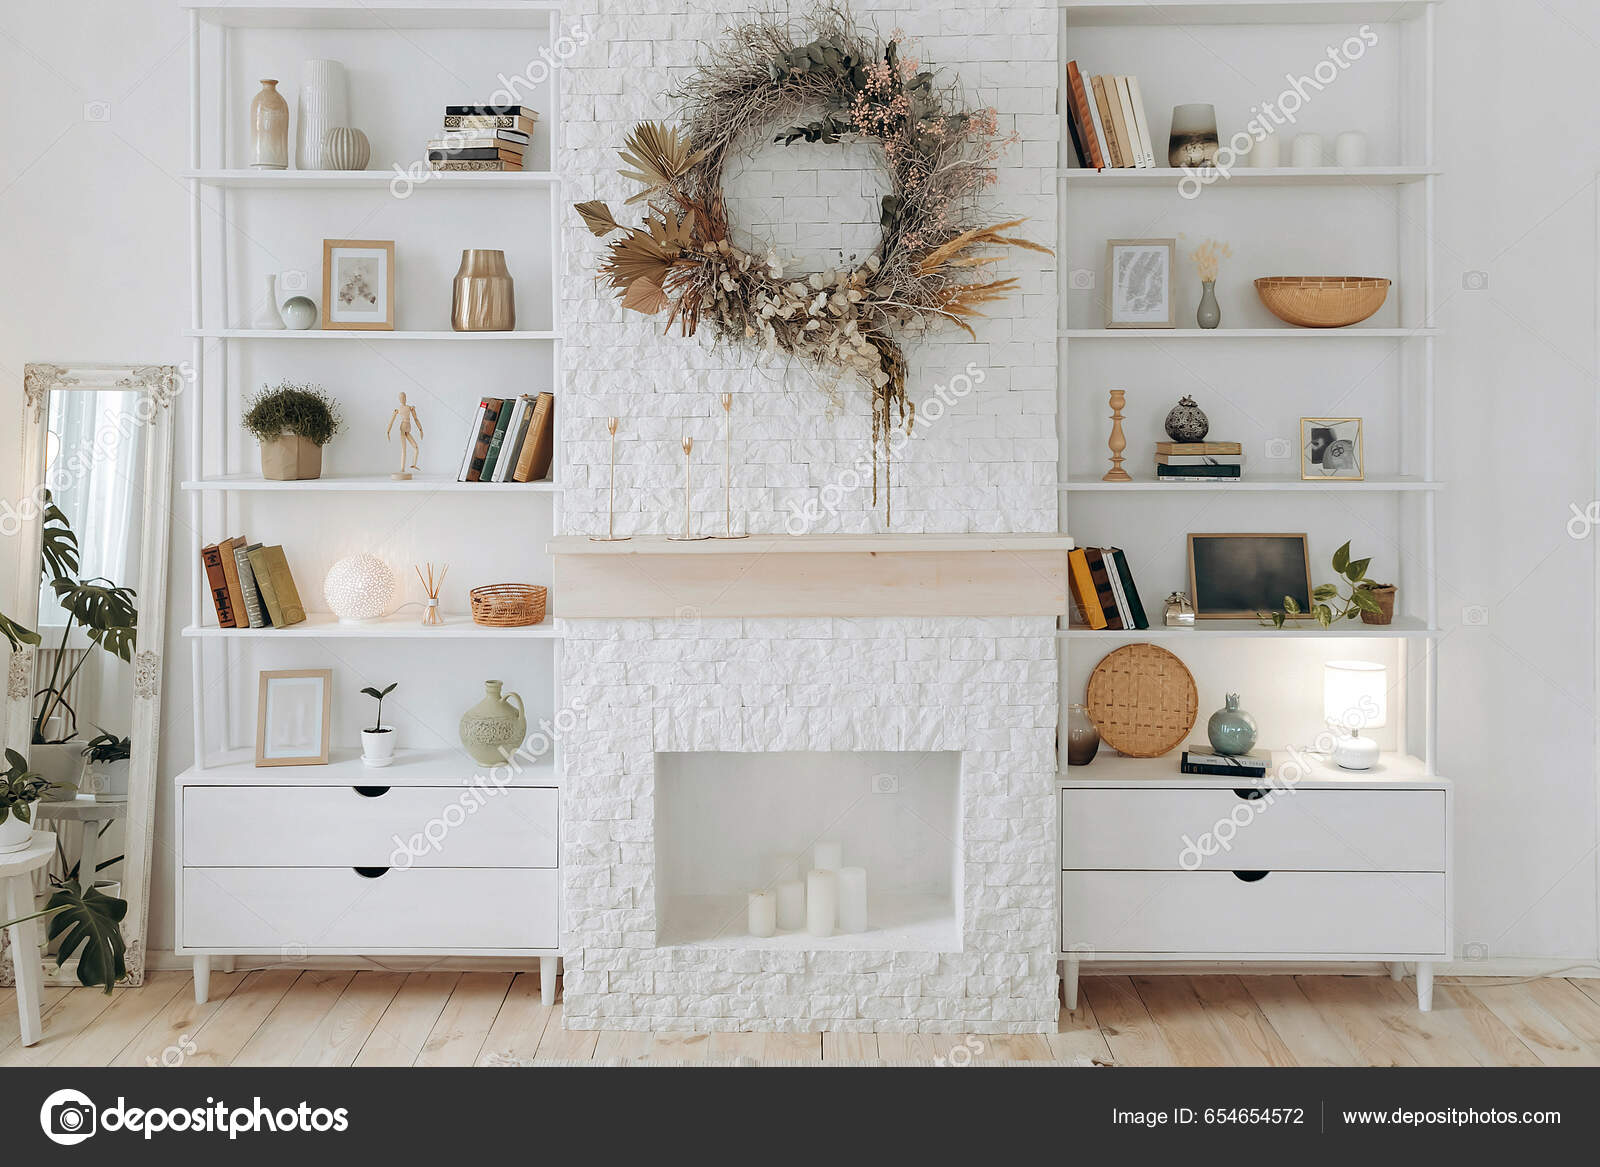 Estantería Blanca Con Libros Y Planta En Maceta En Una Pared Rosa Pálido  Imagen de archivo - Imagen de espacio, color: 212161709